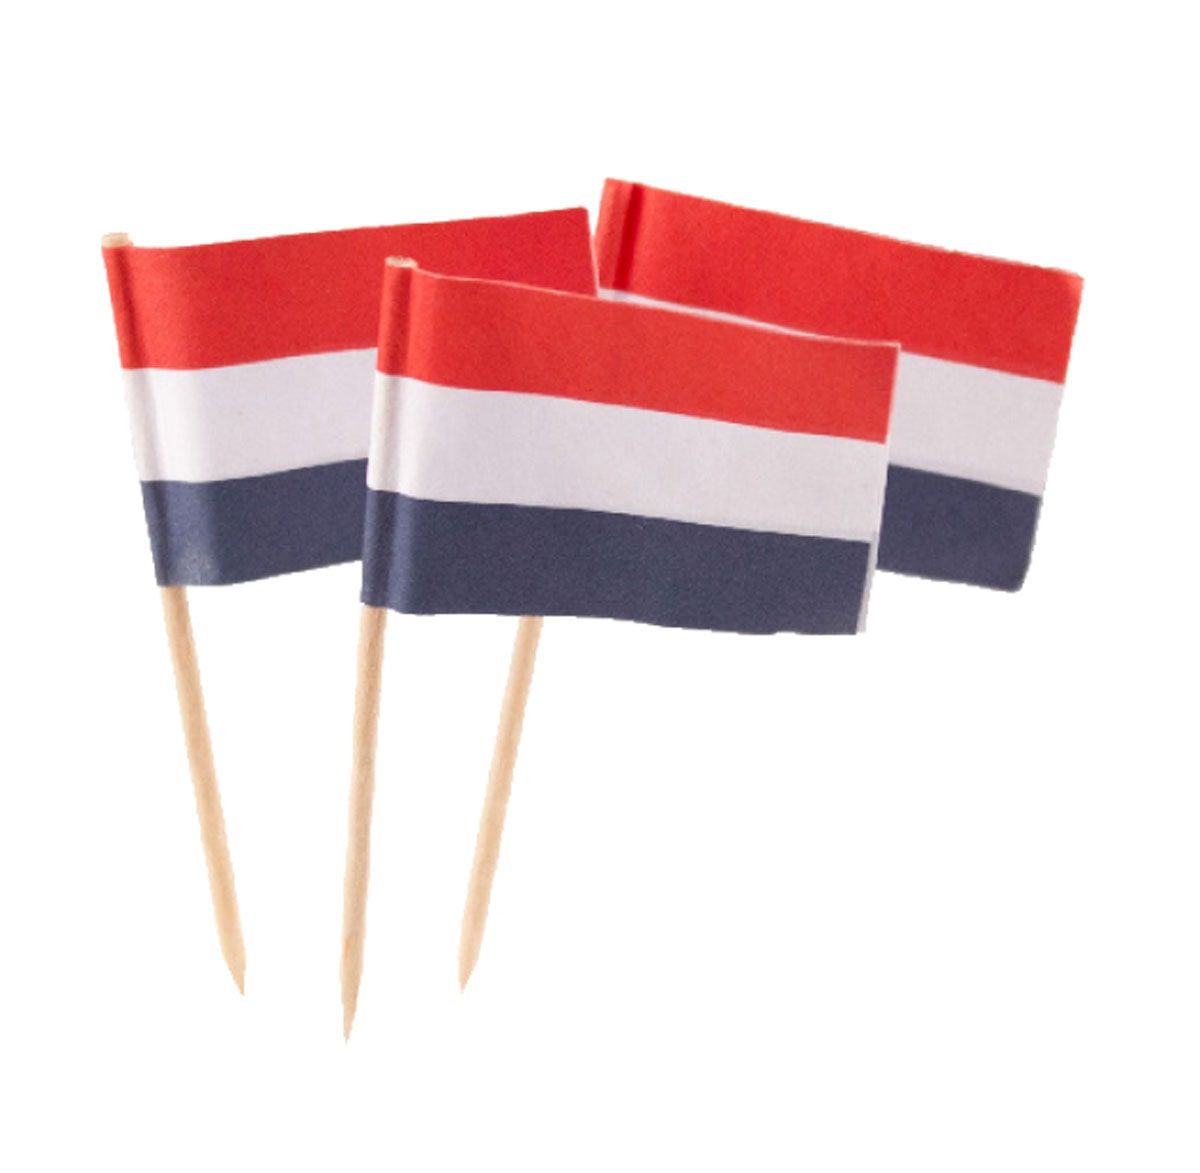 Cocktail prikkers 50 stuks nederlandse vlag